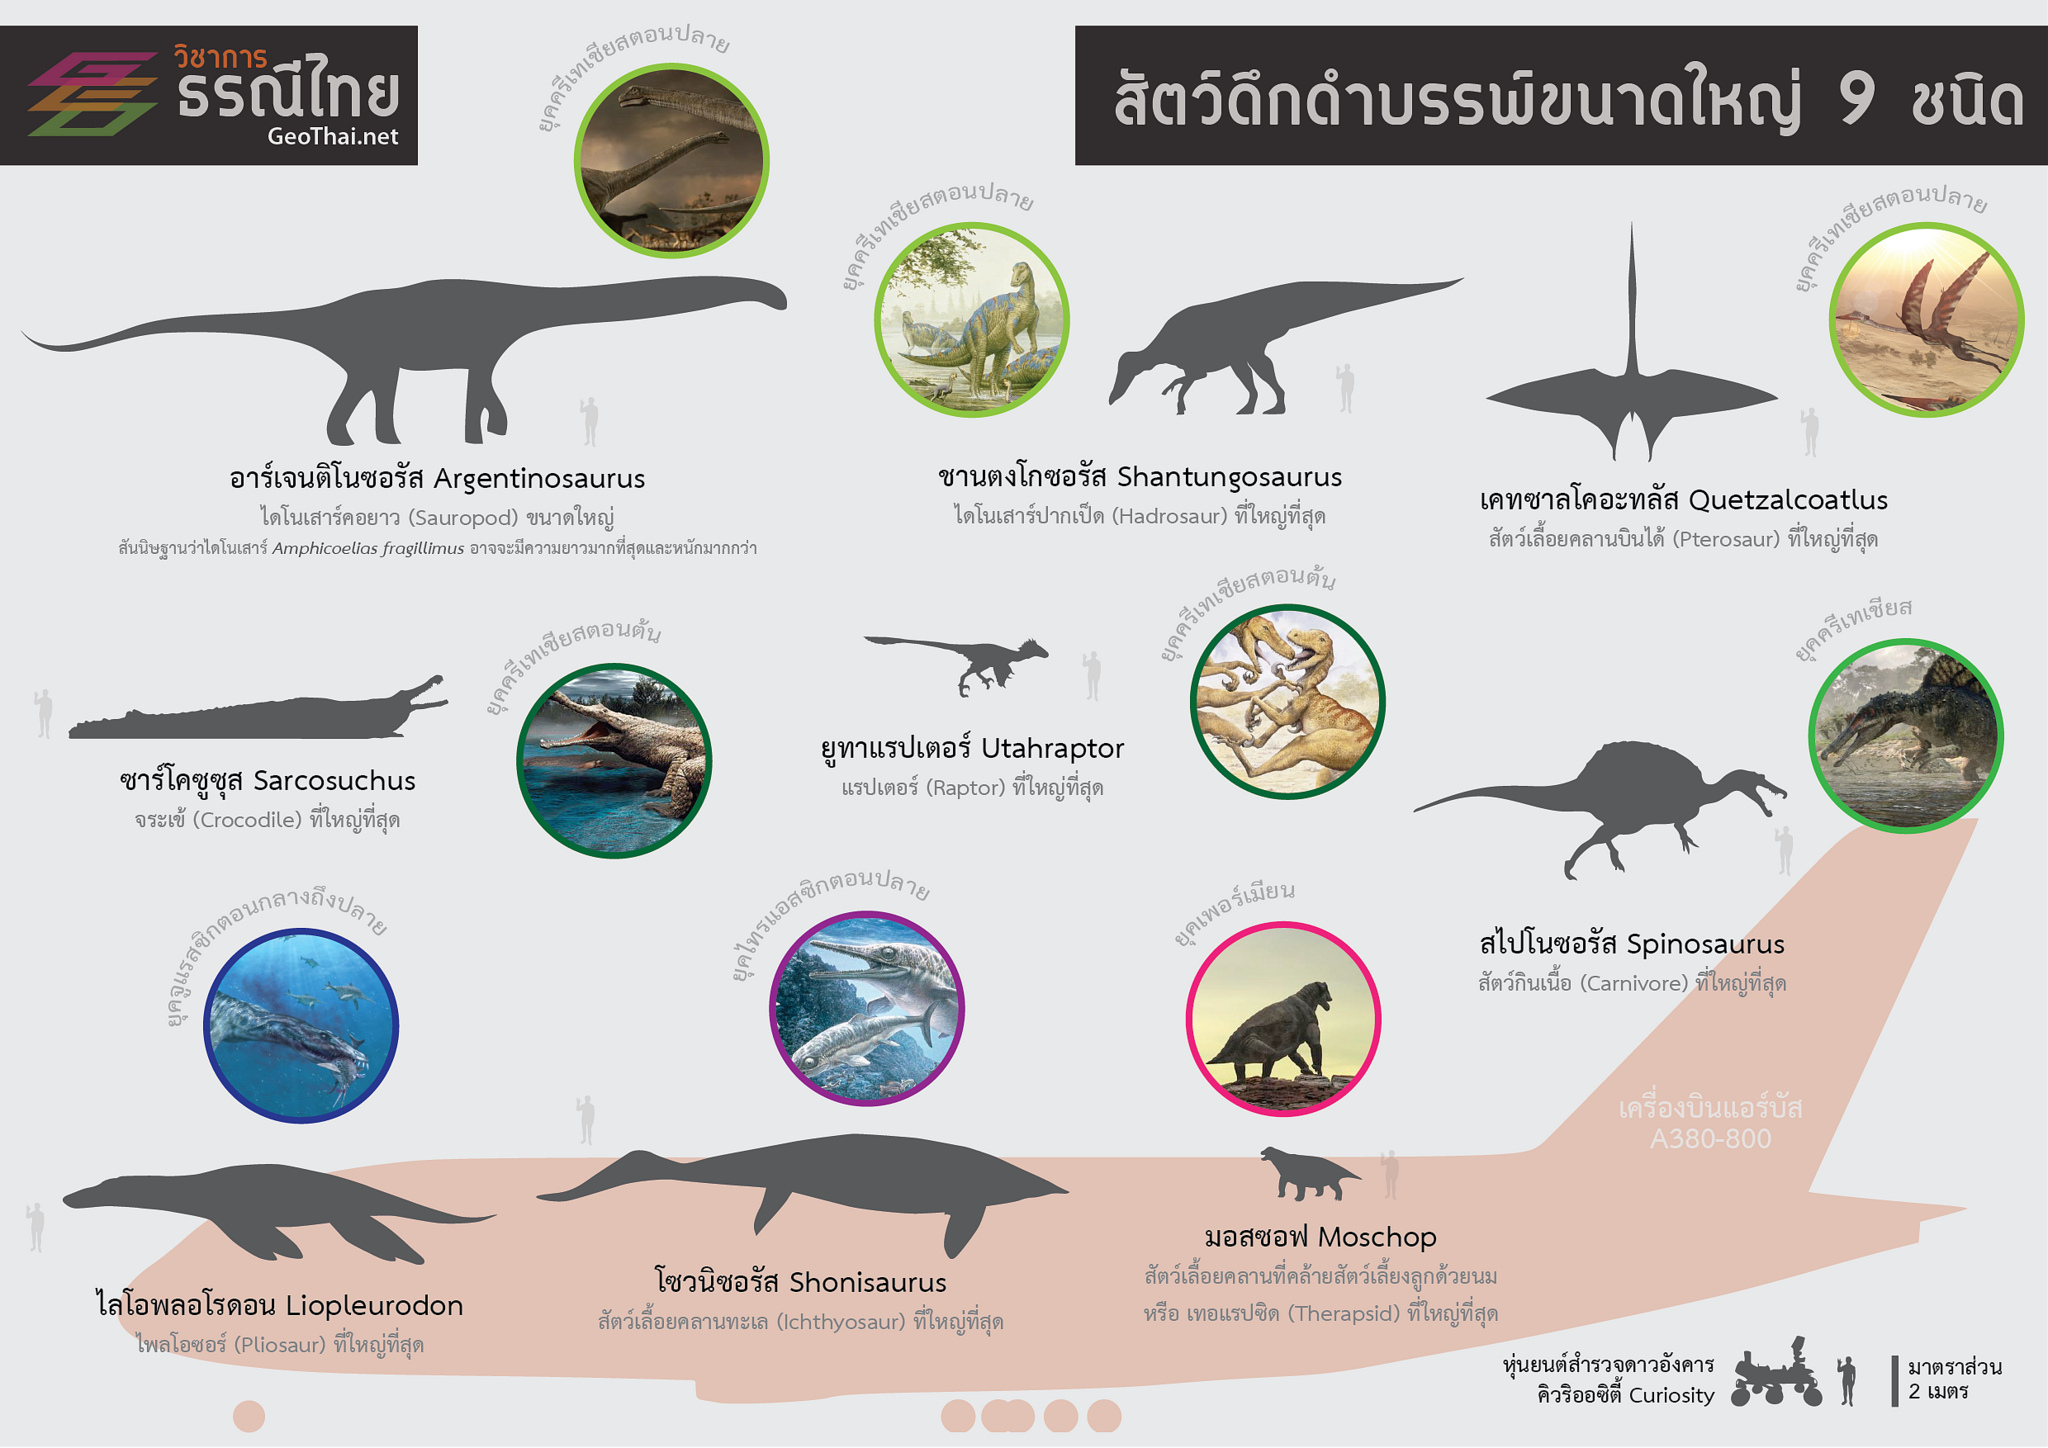 โปสเตอร์,สื่อการเรียนรู้,สัตว์ดึกดำบรรพ์ขนาดใหญ่ 9 ชนิด,Geothai,ไดโนเสาร์,dinosaur